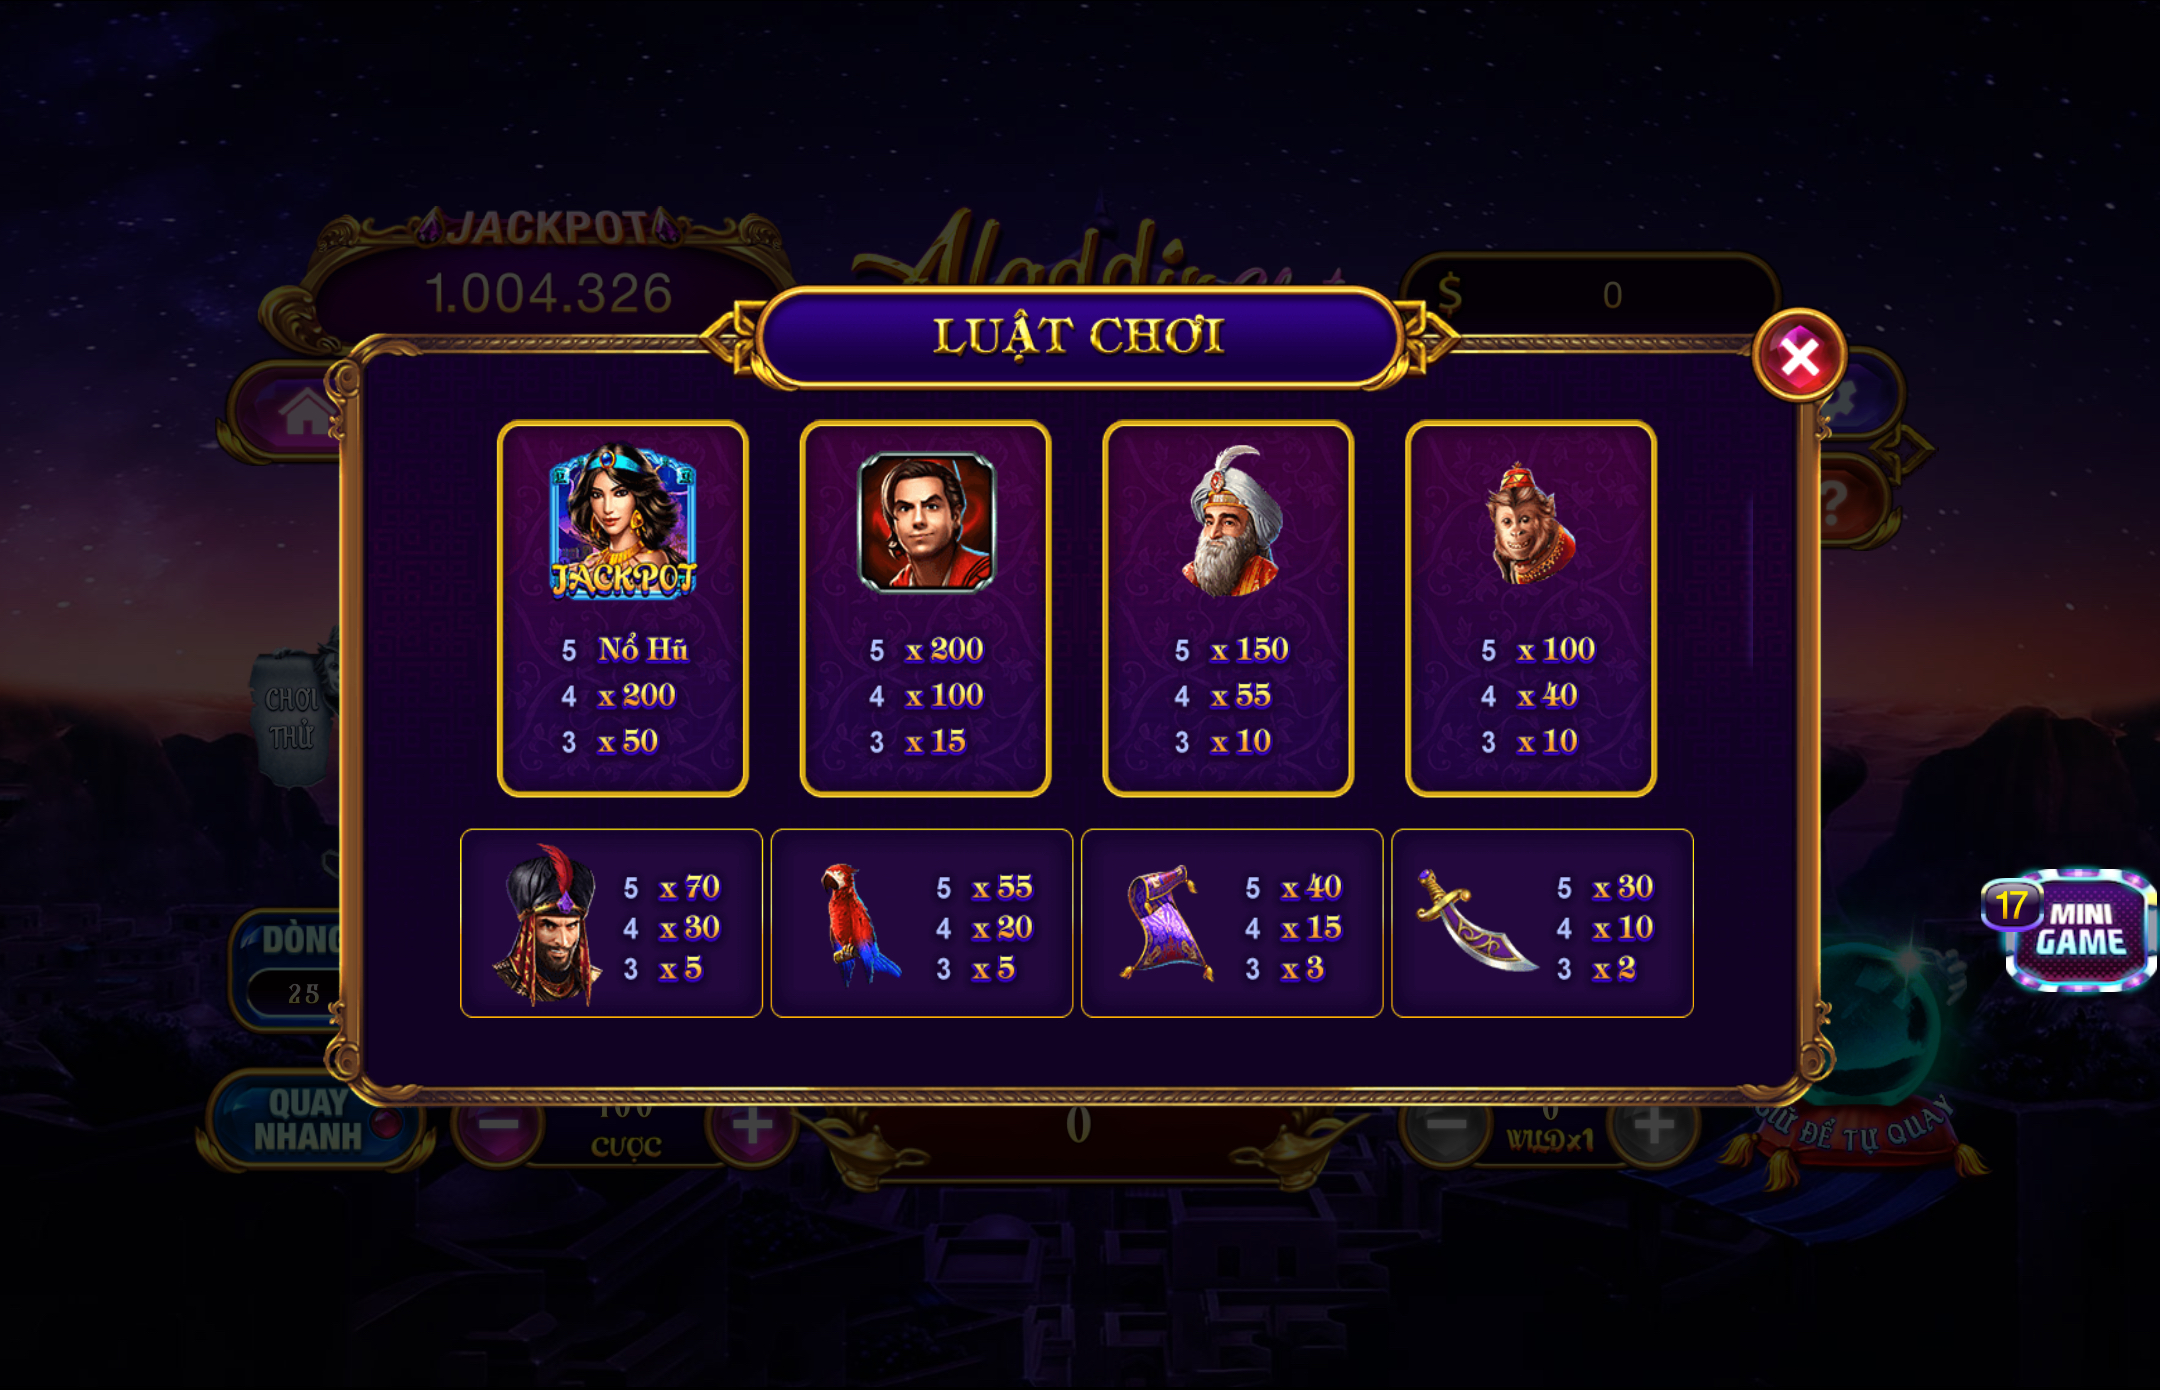 Luật chơi tựa game slot game nổ hũ Aladdin đơn giản đến bất ngờ